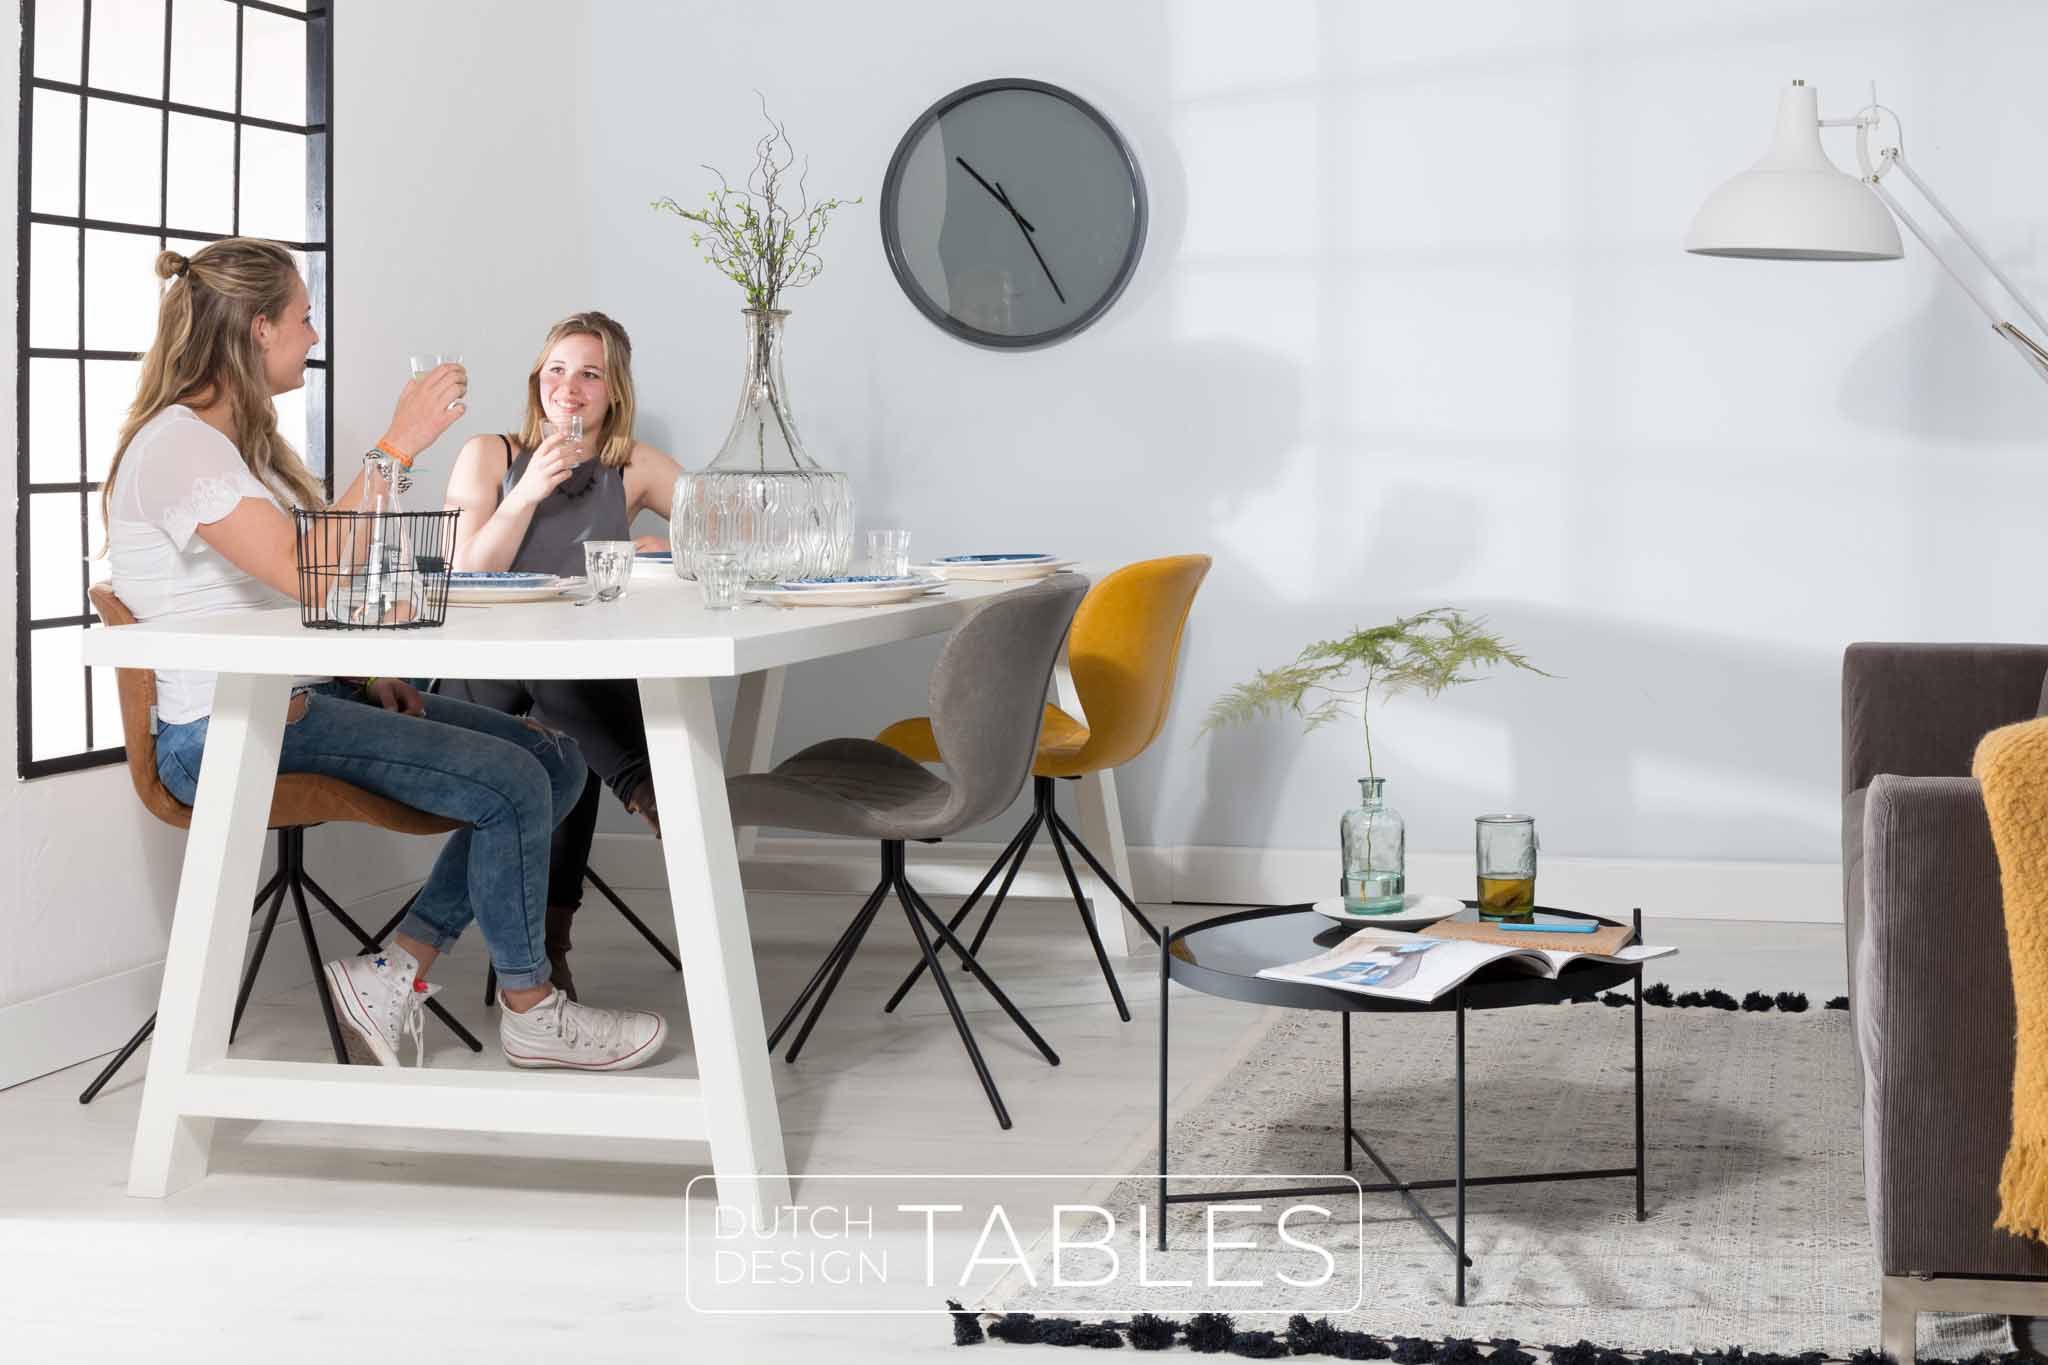 opwinding Eed Vergelijken Stoel Zuiver OMG LL | Leather Look | Verkrijgbaar in 5 kleuren! – Dutch  Design Tables